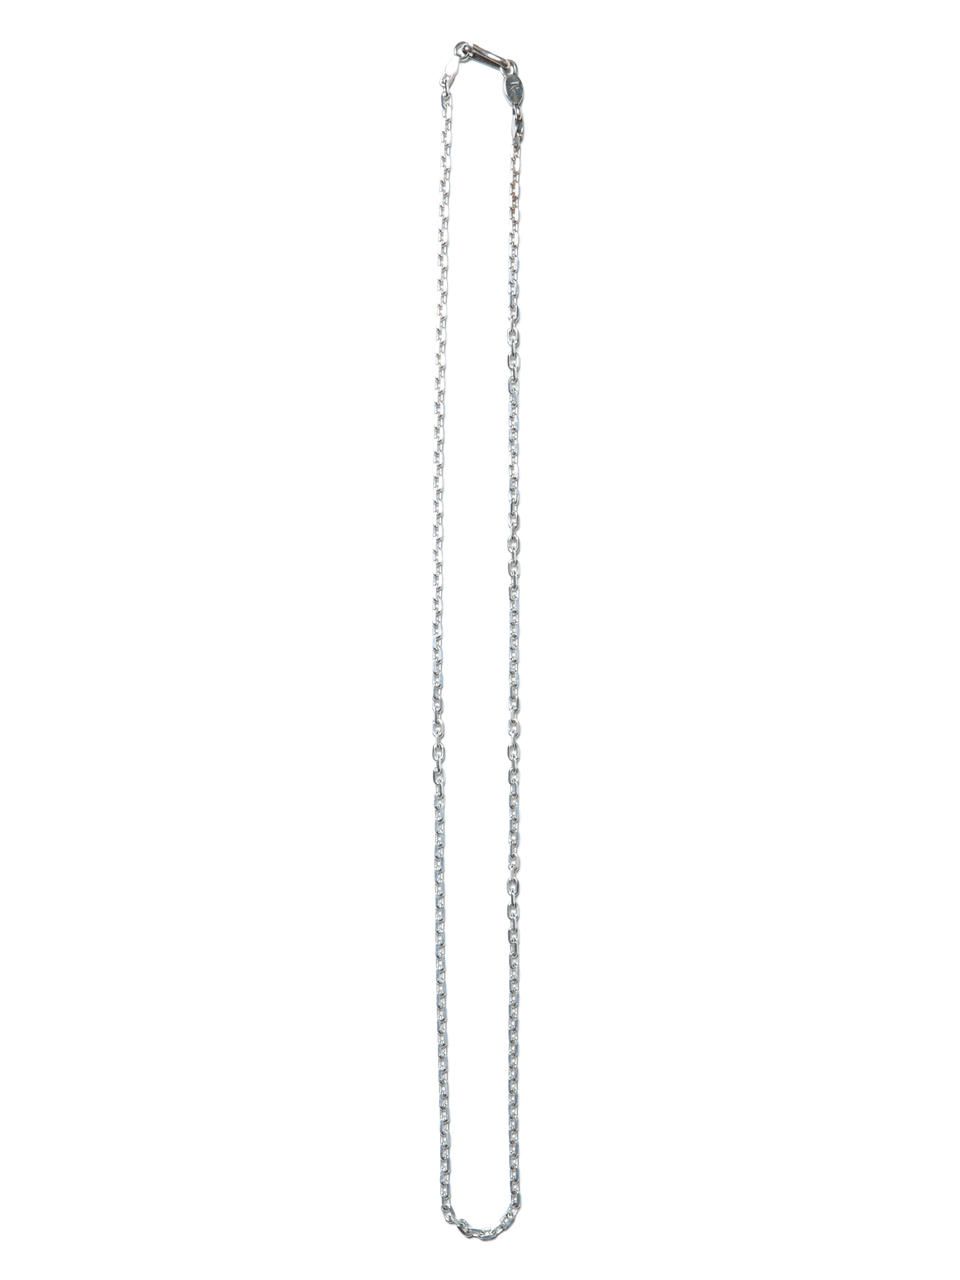 画像: ANTIDOTE BUYERS CLUB/Oval Link Chain（50cm）（シルバー）［オーバルリンクチェーンネックレス］